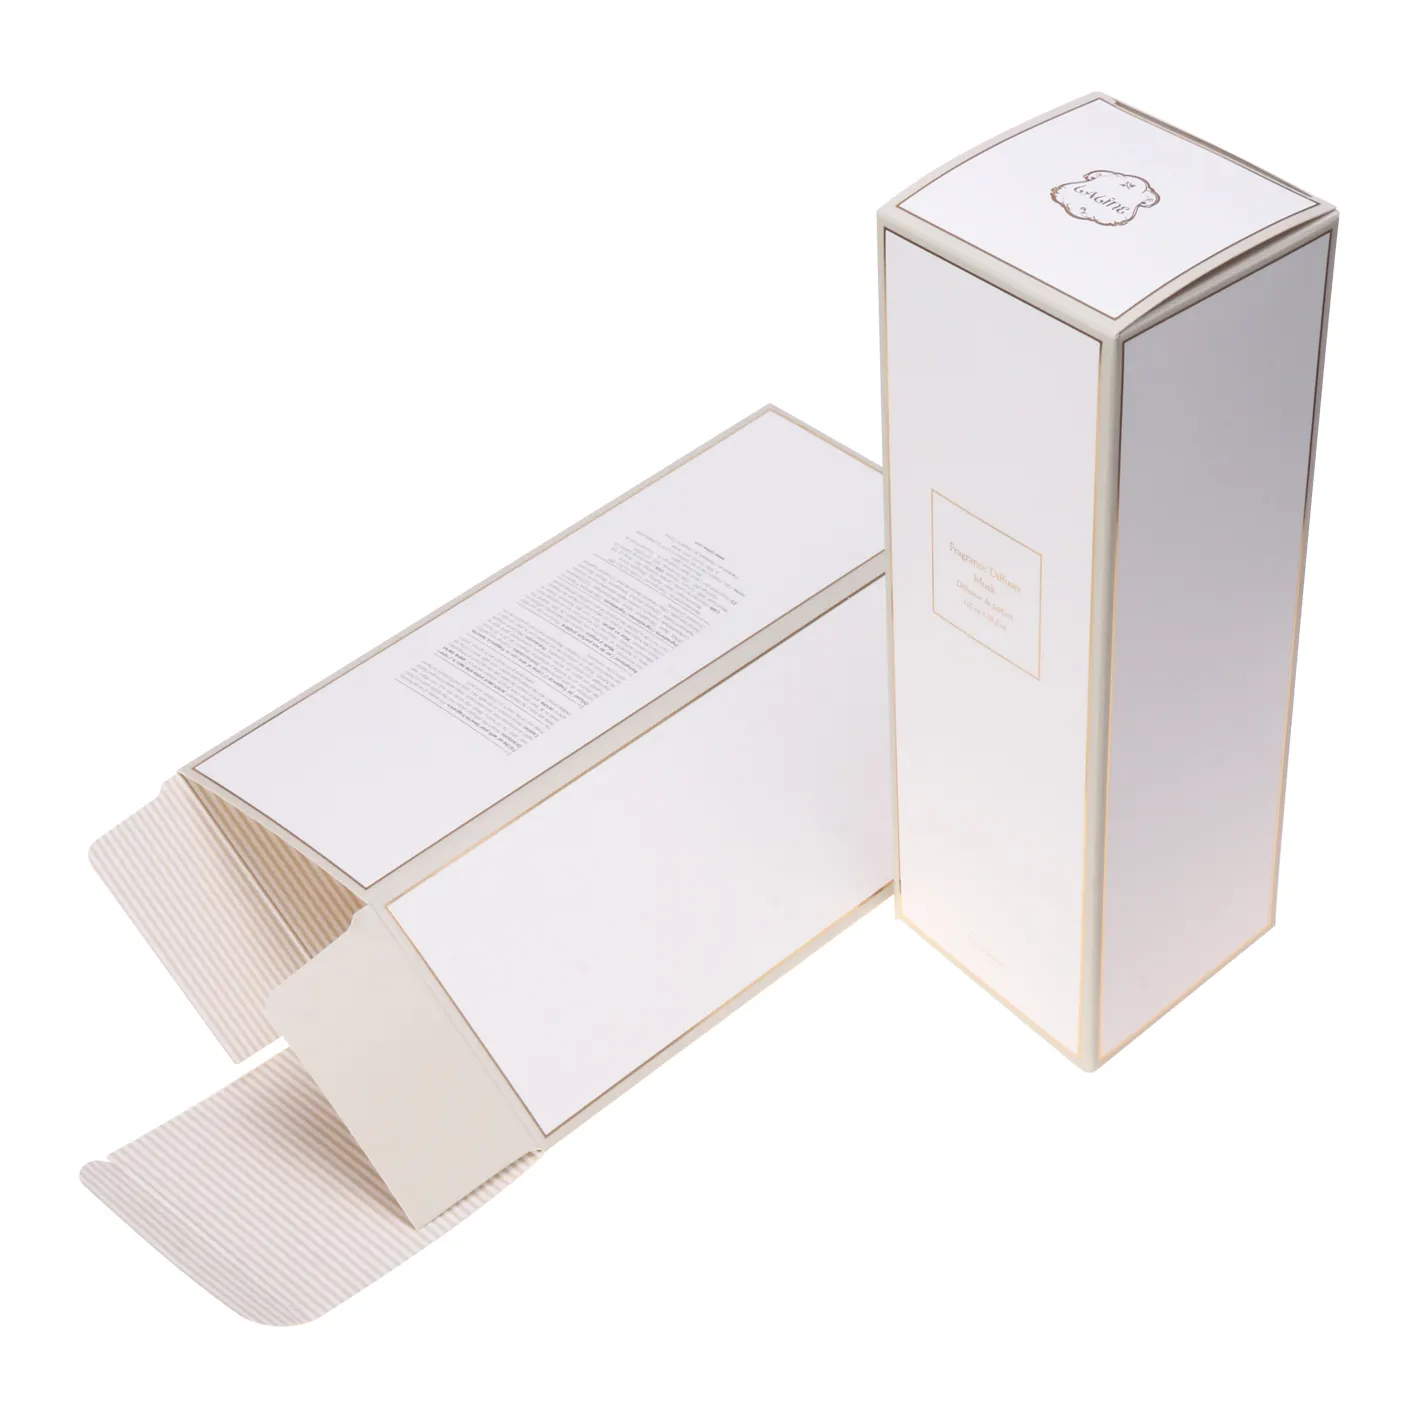 Perfume cosmético reciclar eco friendly personalizado impressão caixa de papel